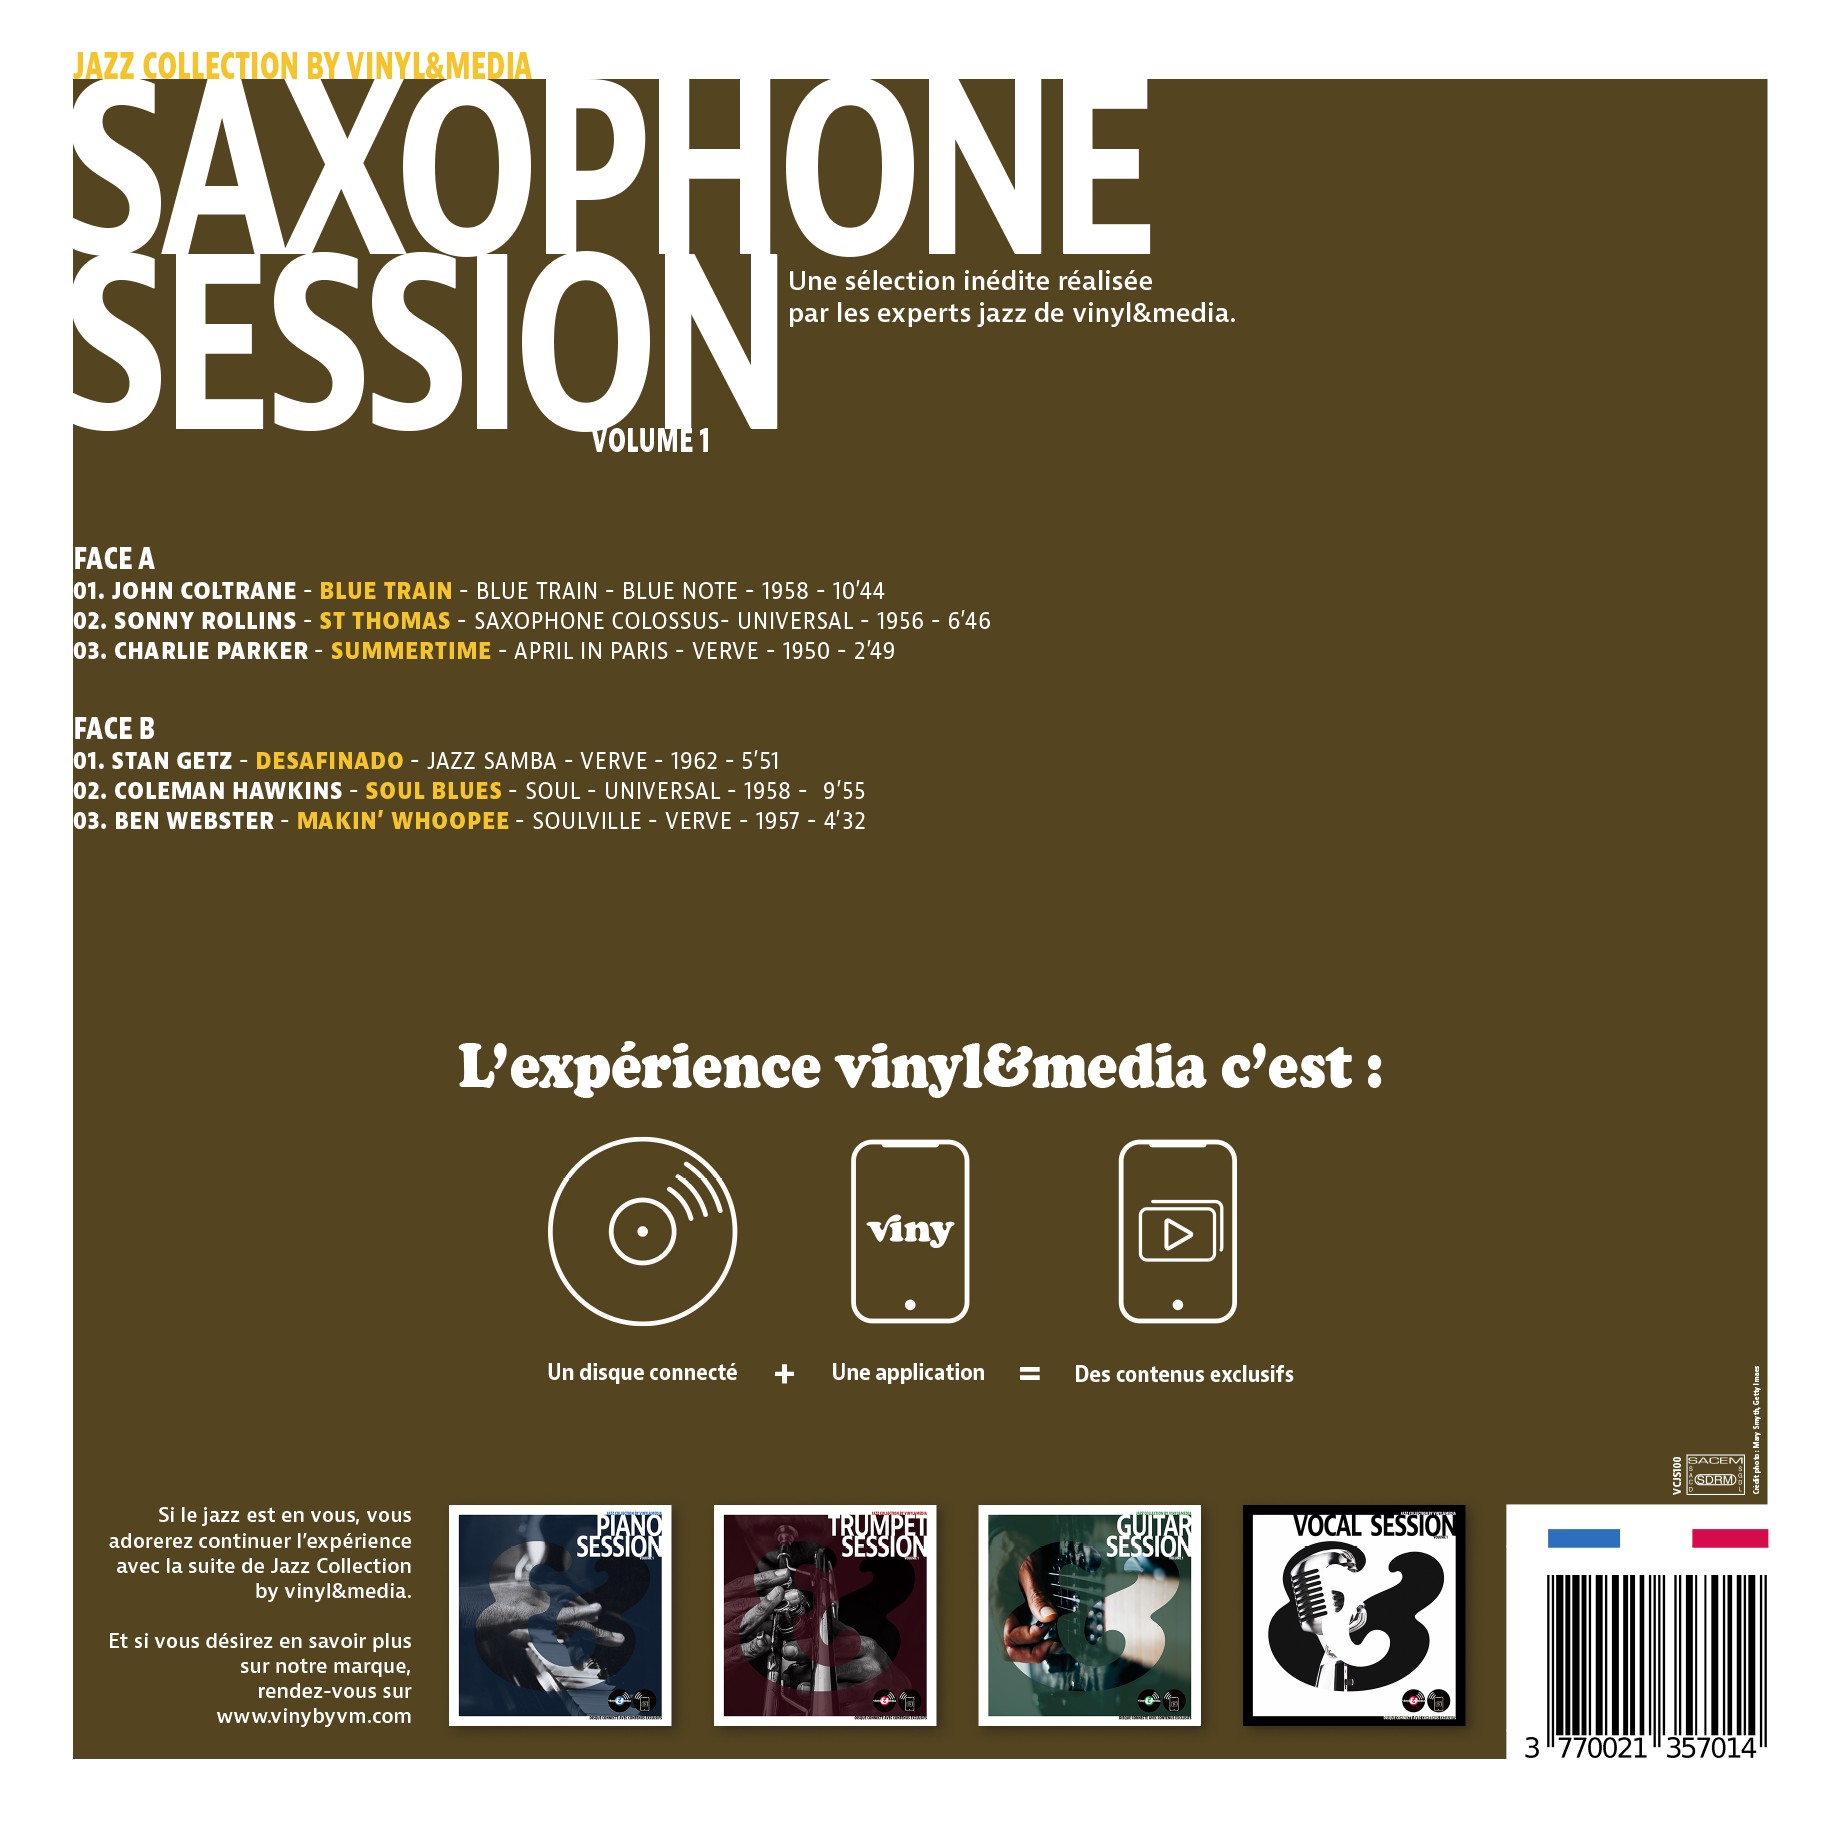 재즈 색소폰 모음집 (Saxophone Session Vol.1) [LP]